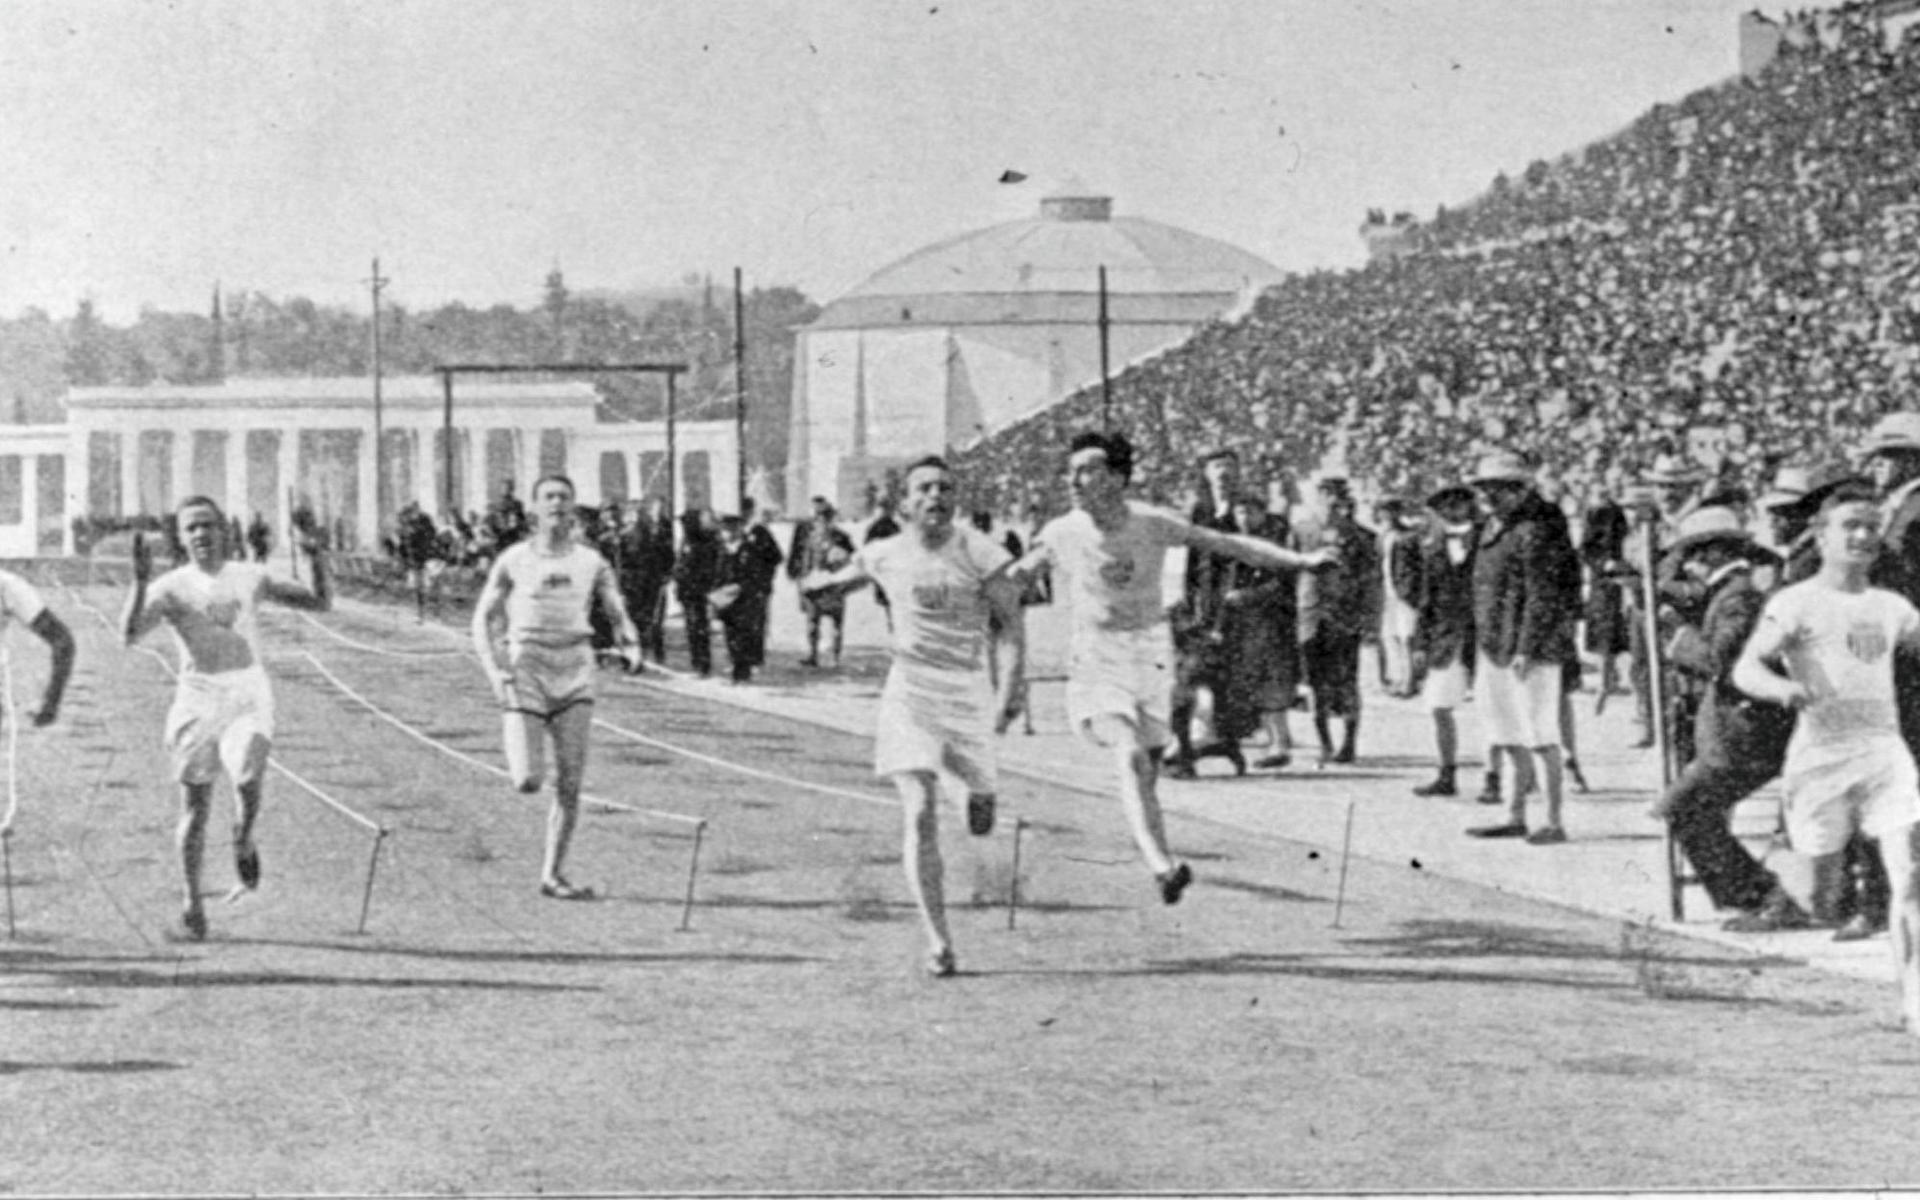 OS-final på 100 meter. Knut ”Knatten” Lindberg var den ende europé som lyckades ta sig till final, där han dock blev sist. Vinner gör amerikanen Archie Hahn längst till höger. 